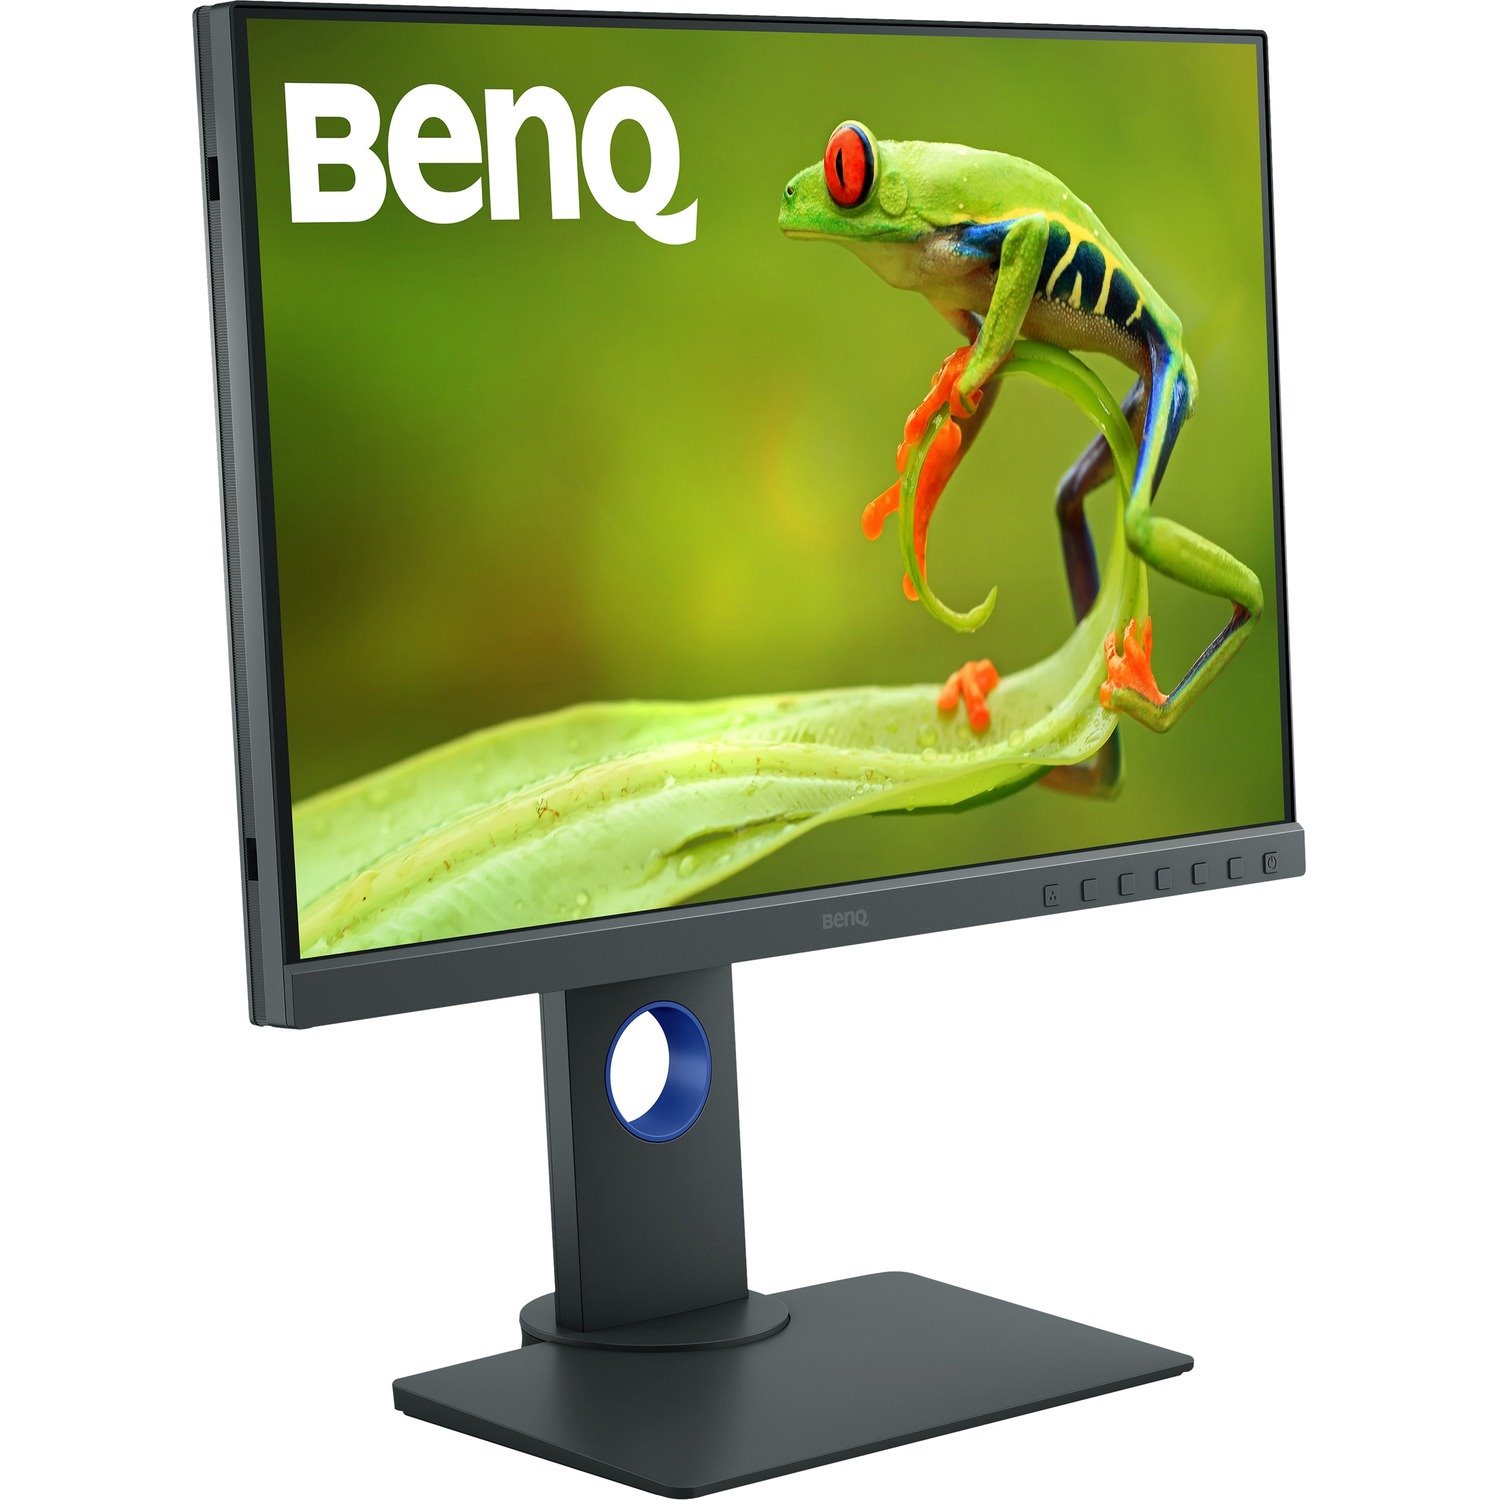 BenQ PhotoVue SW240 24.1" WUXGA LED LCD Monitor - 16:10 - Grey